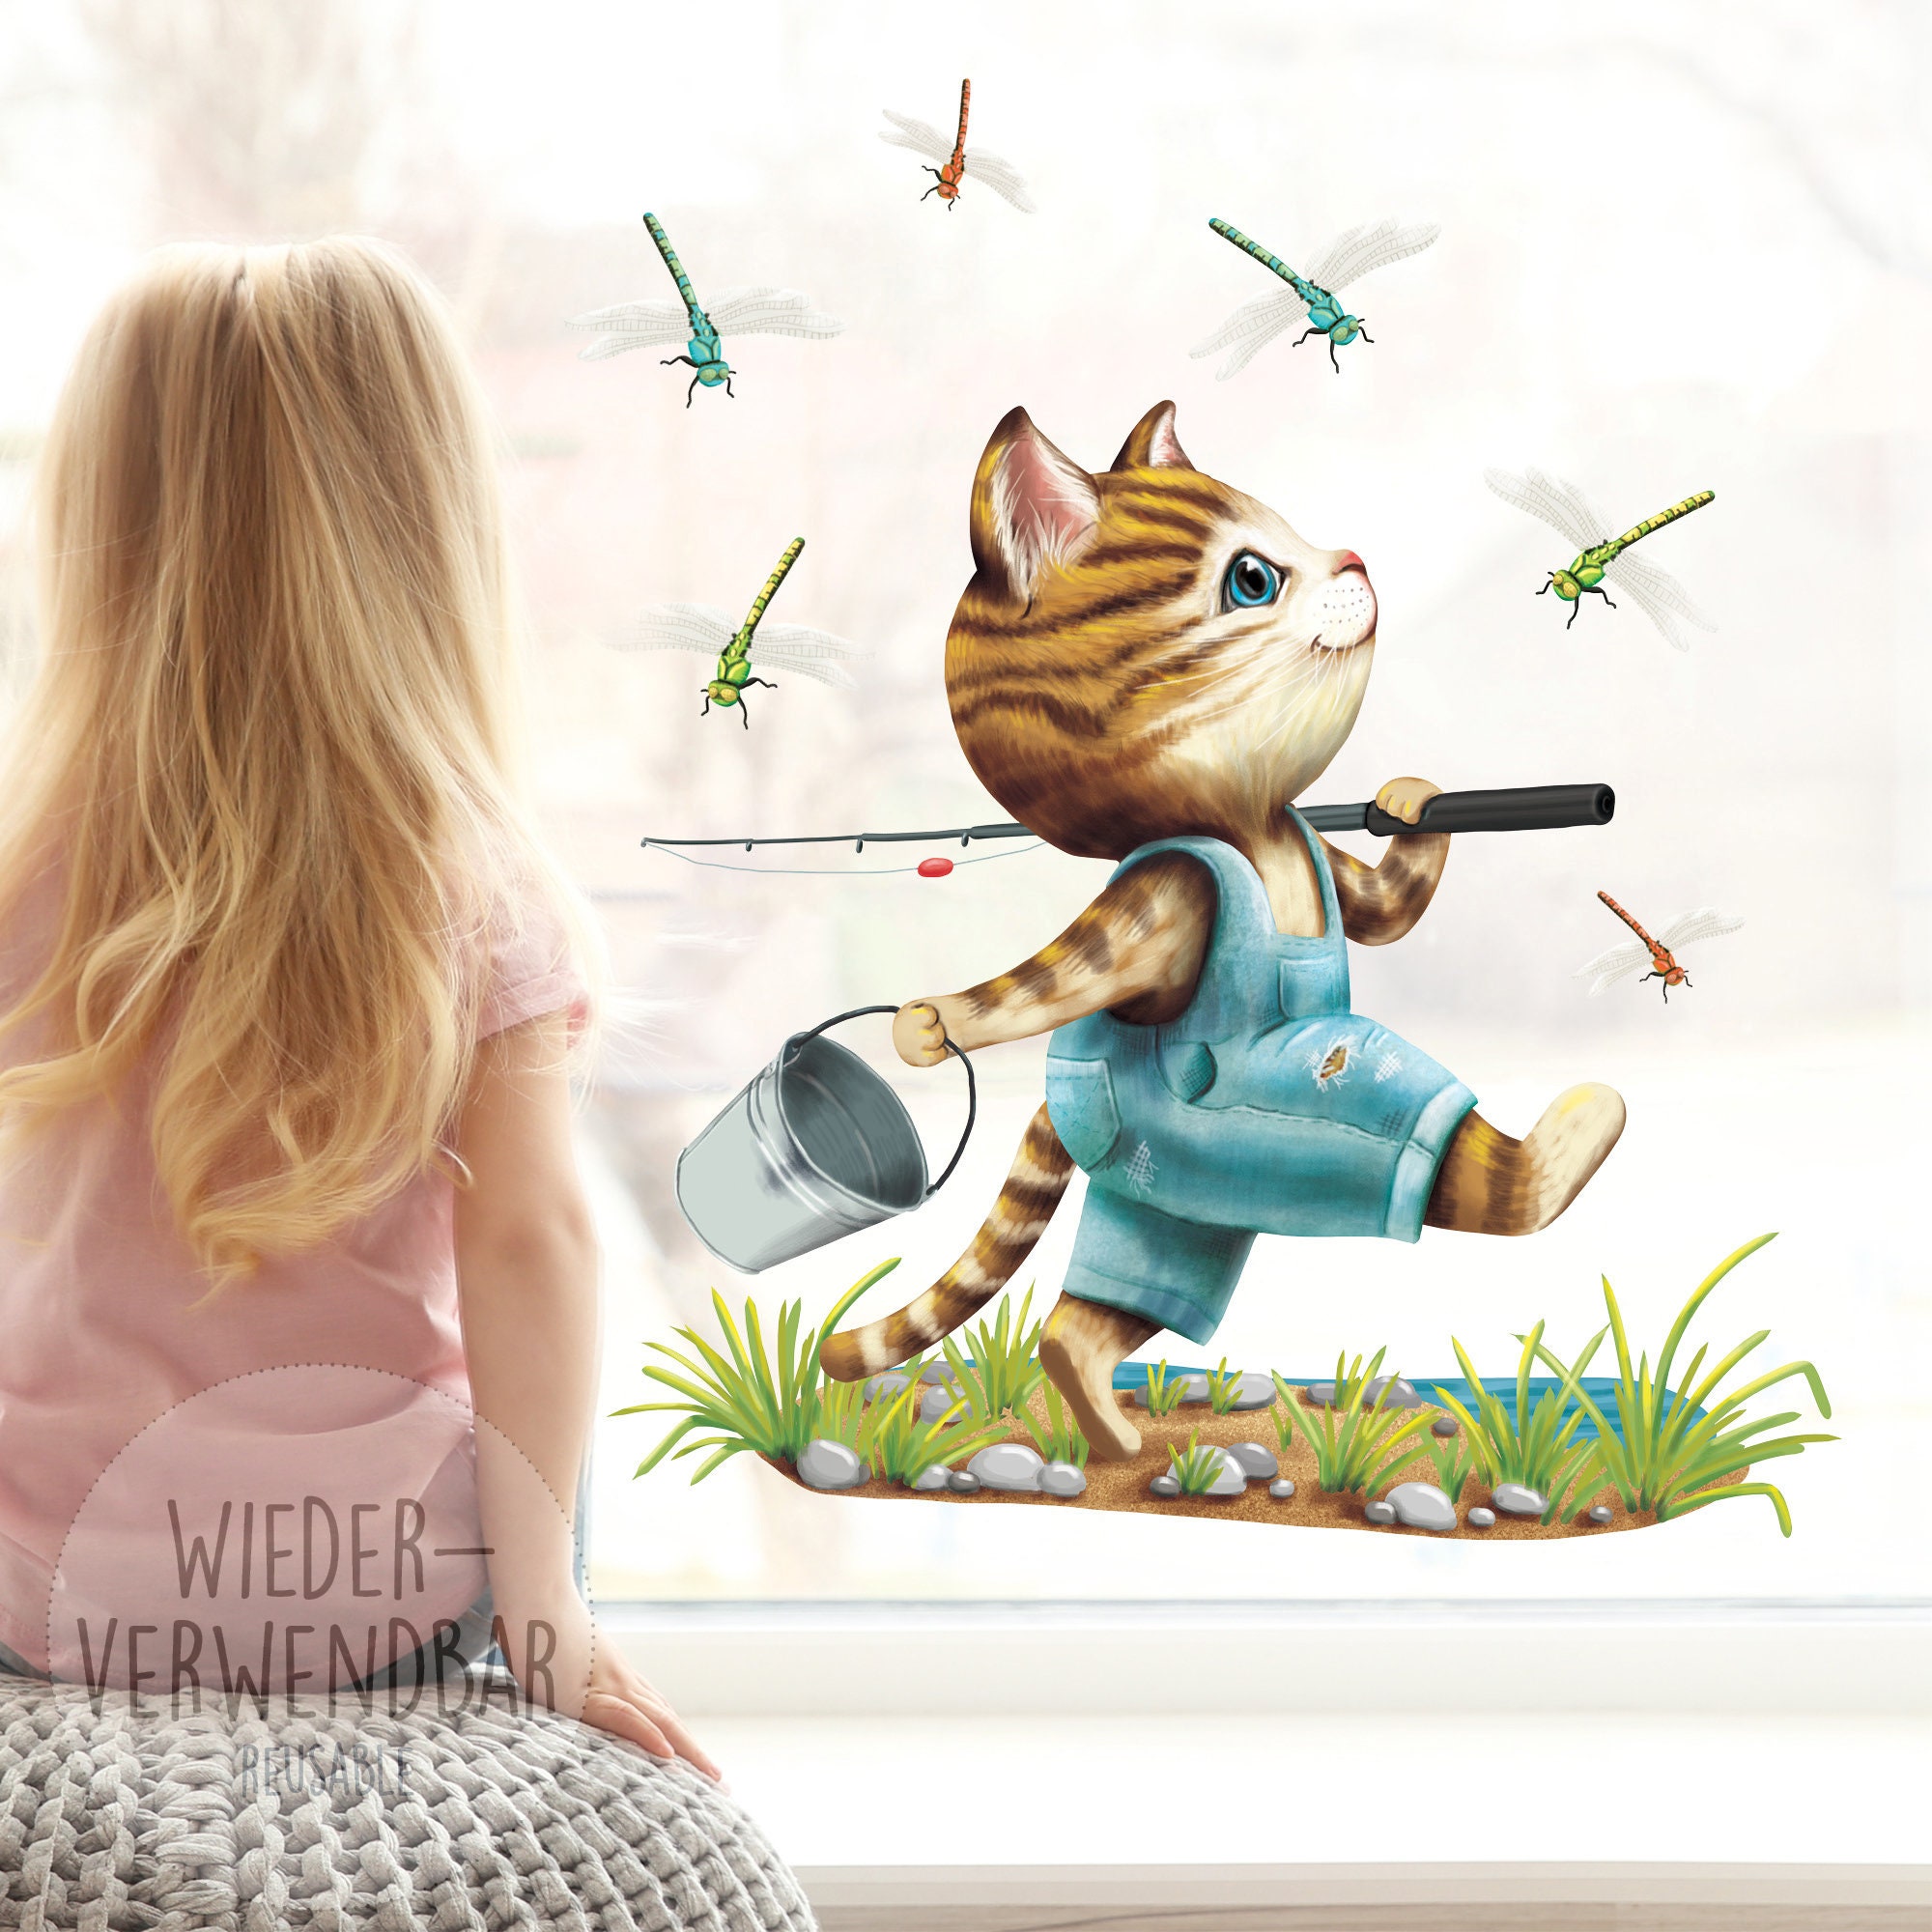 Wiederverwendbares Fensterbild Frühling Kinderzimmer Kind Katze Angler Libellen Fensterdeko angeln, Geschenk